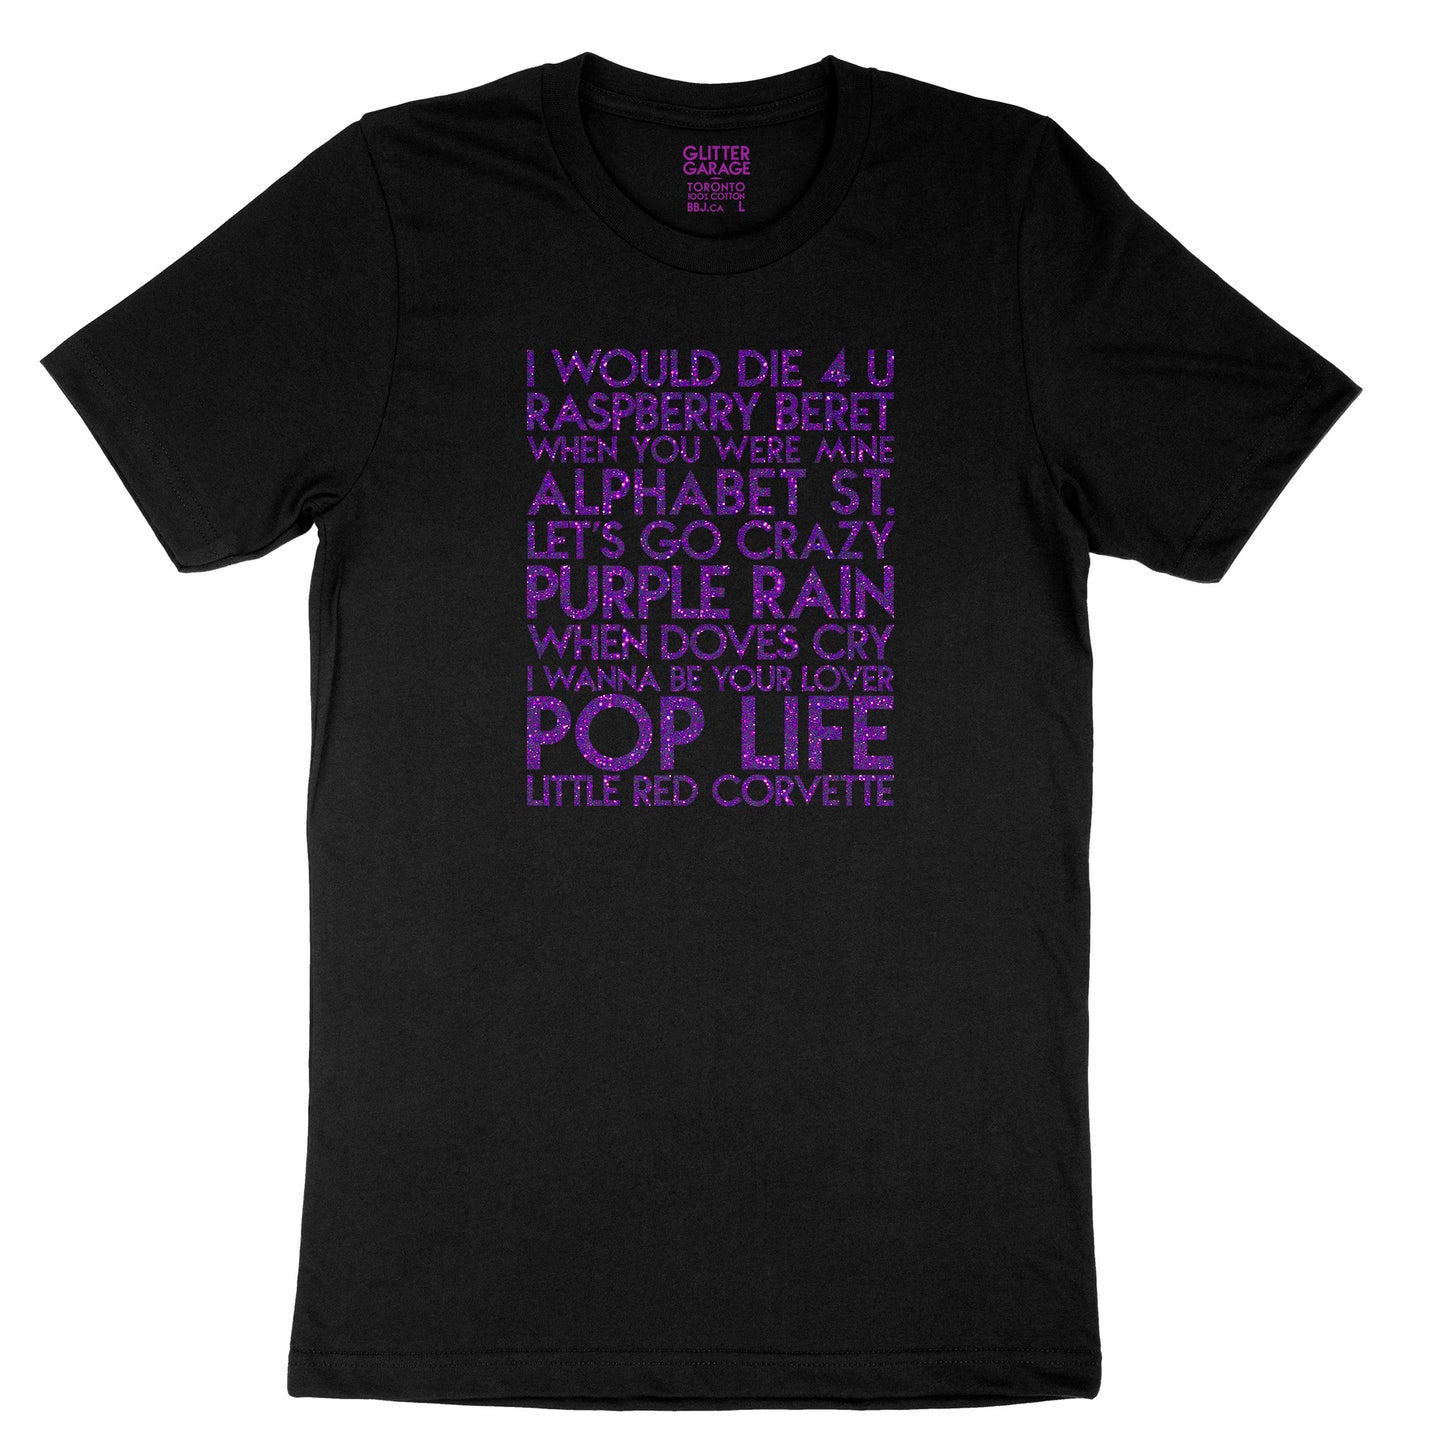 Prince songs YourTen custom sample - purple glitter text on black unisex t-shirt -  by BBJ / Glitter Garage